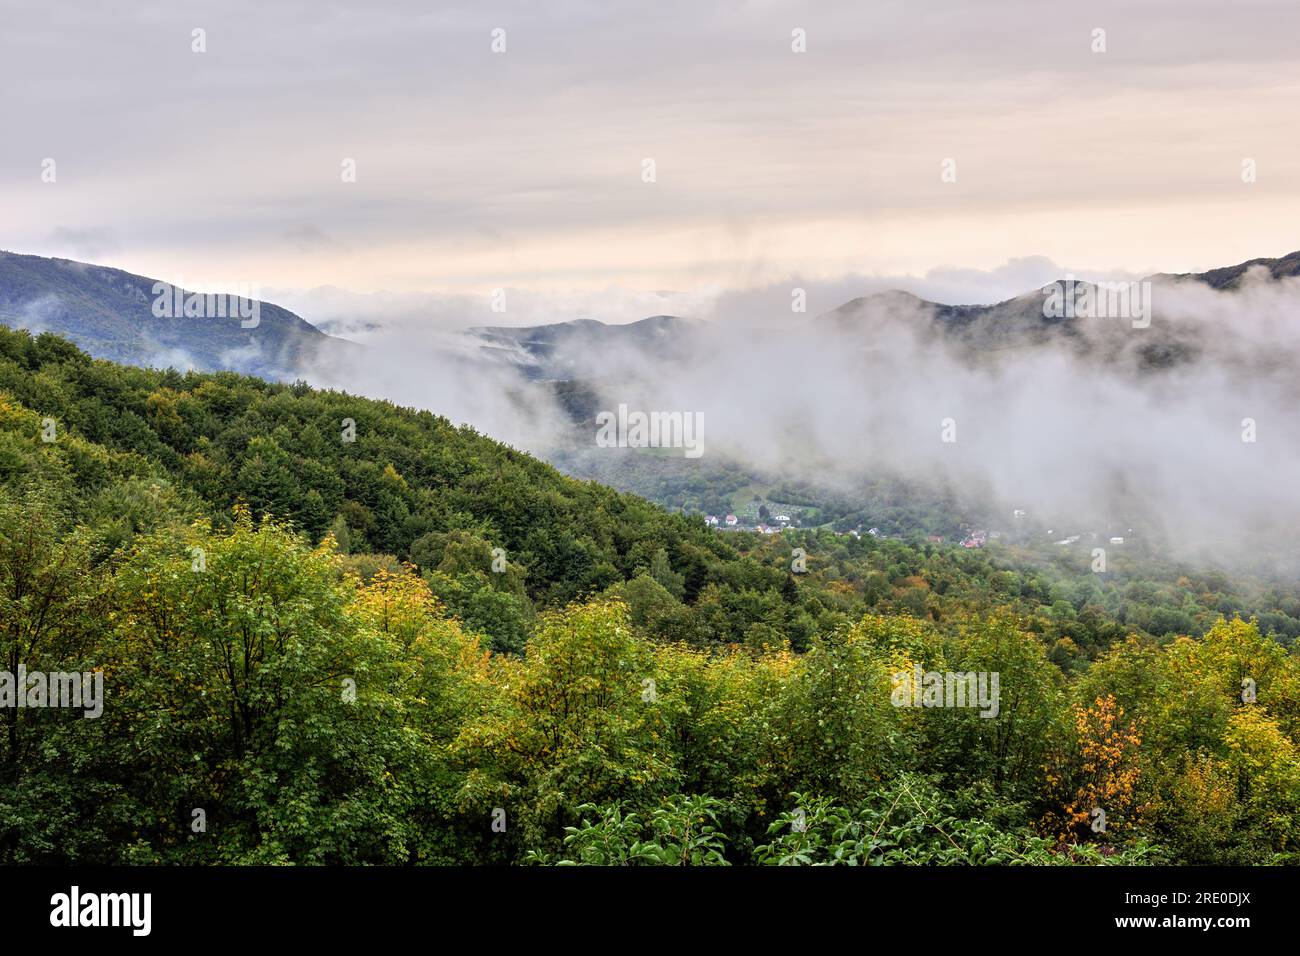 Herbstliche Berglandschaft mit Wald bei Sonnenaufgang. Nebeliger Morgen, rollender Nebel in einem Tal mit Häusern. Wolkiger Himmel. Mojtin, Slowakei Stockfoto